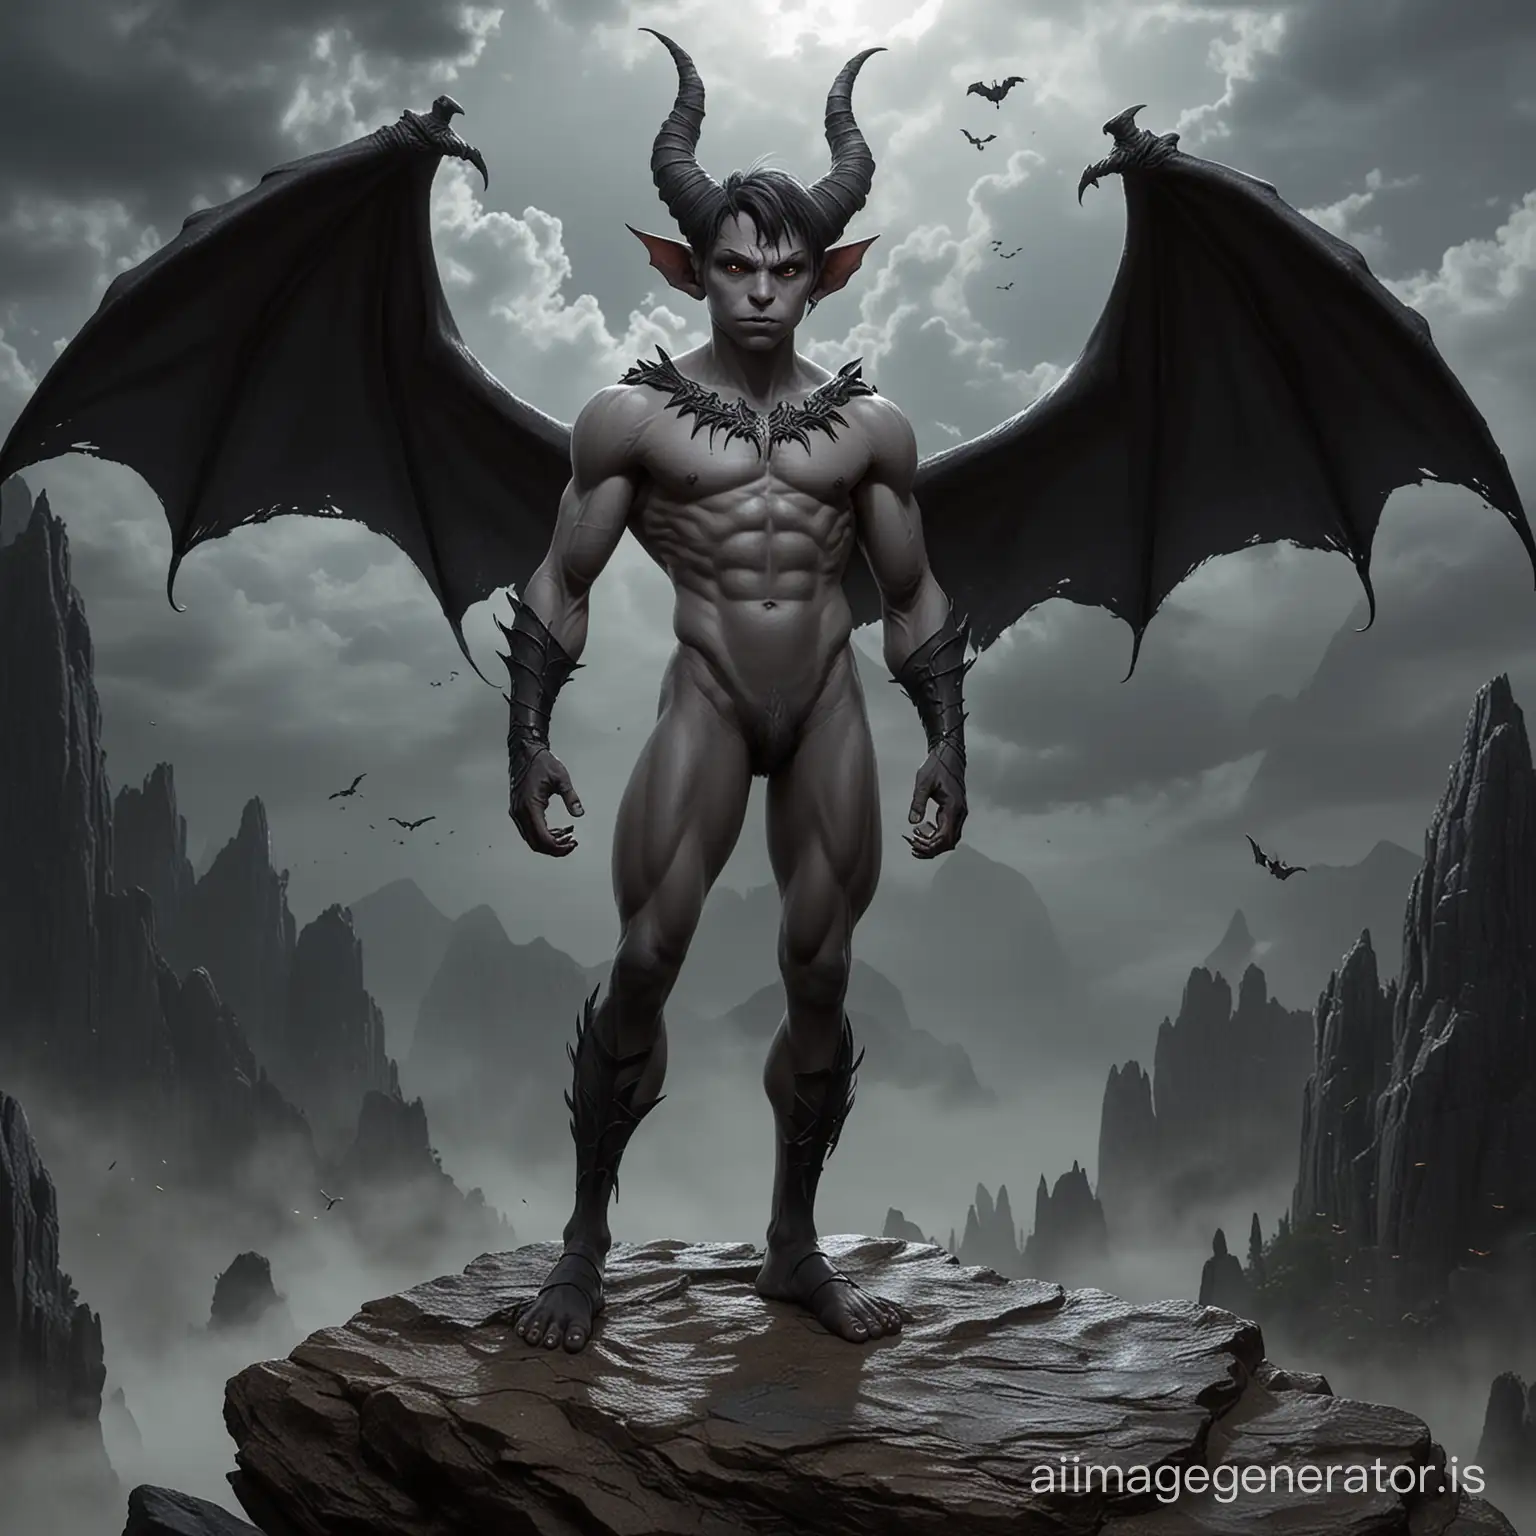 Sensual-Demonboy-with-Batlike-Wings-in-Dark-Night